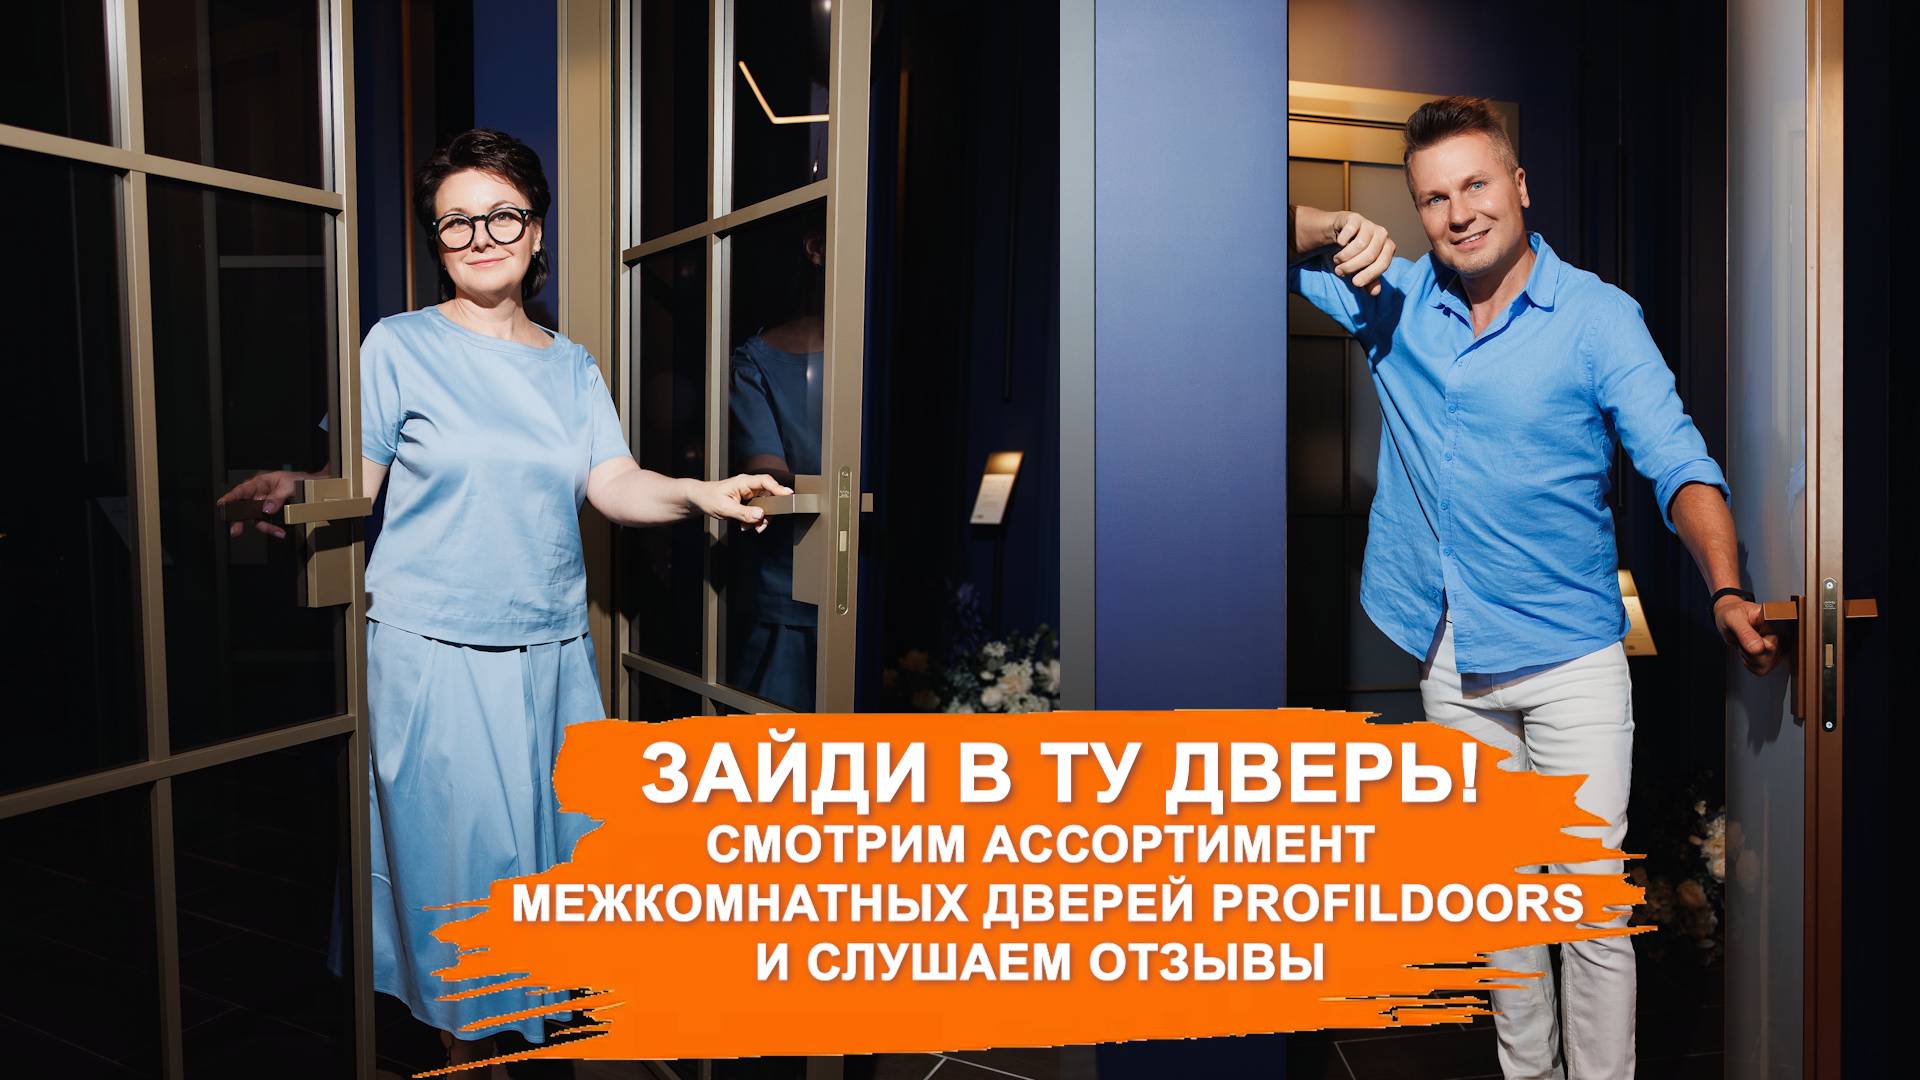 Зайти в ту дверь! В Ярославле открылся шоурум дверей ProfilDoors. Смотрим ассортимент и отзывы